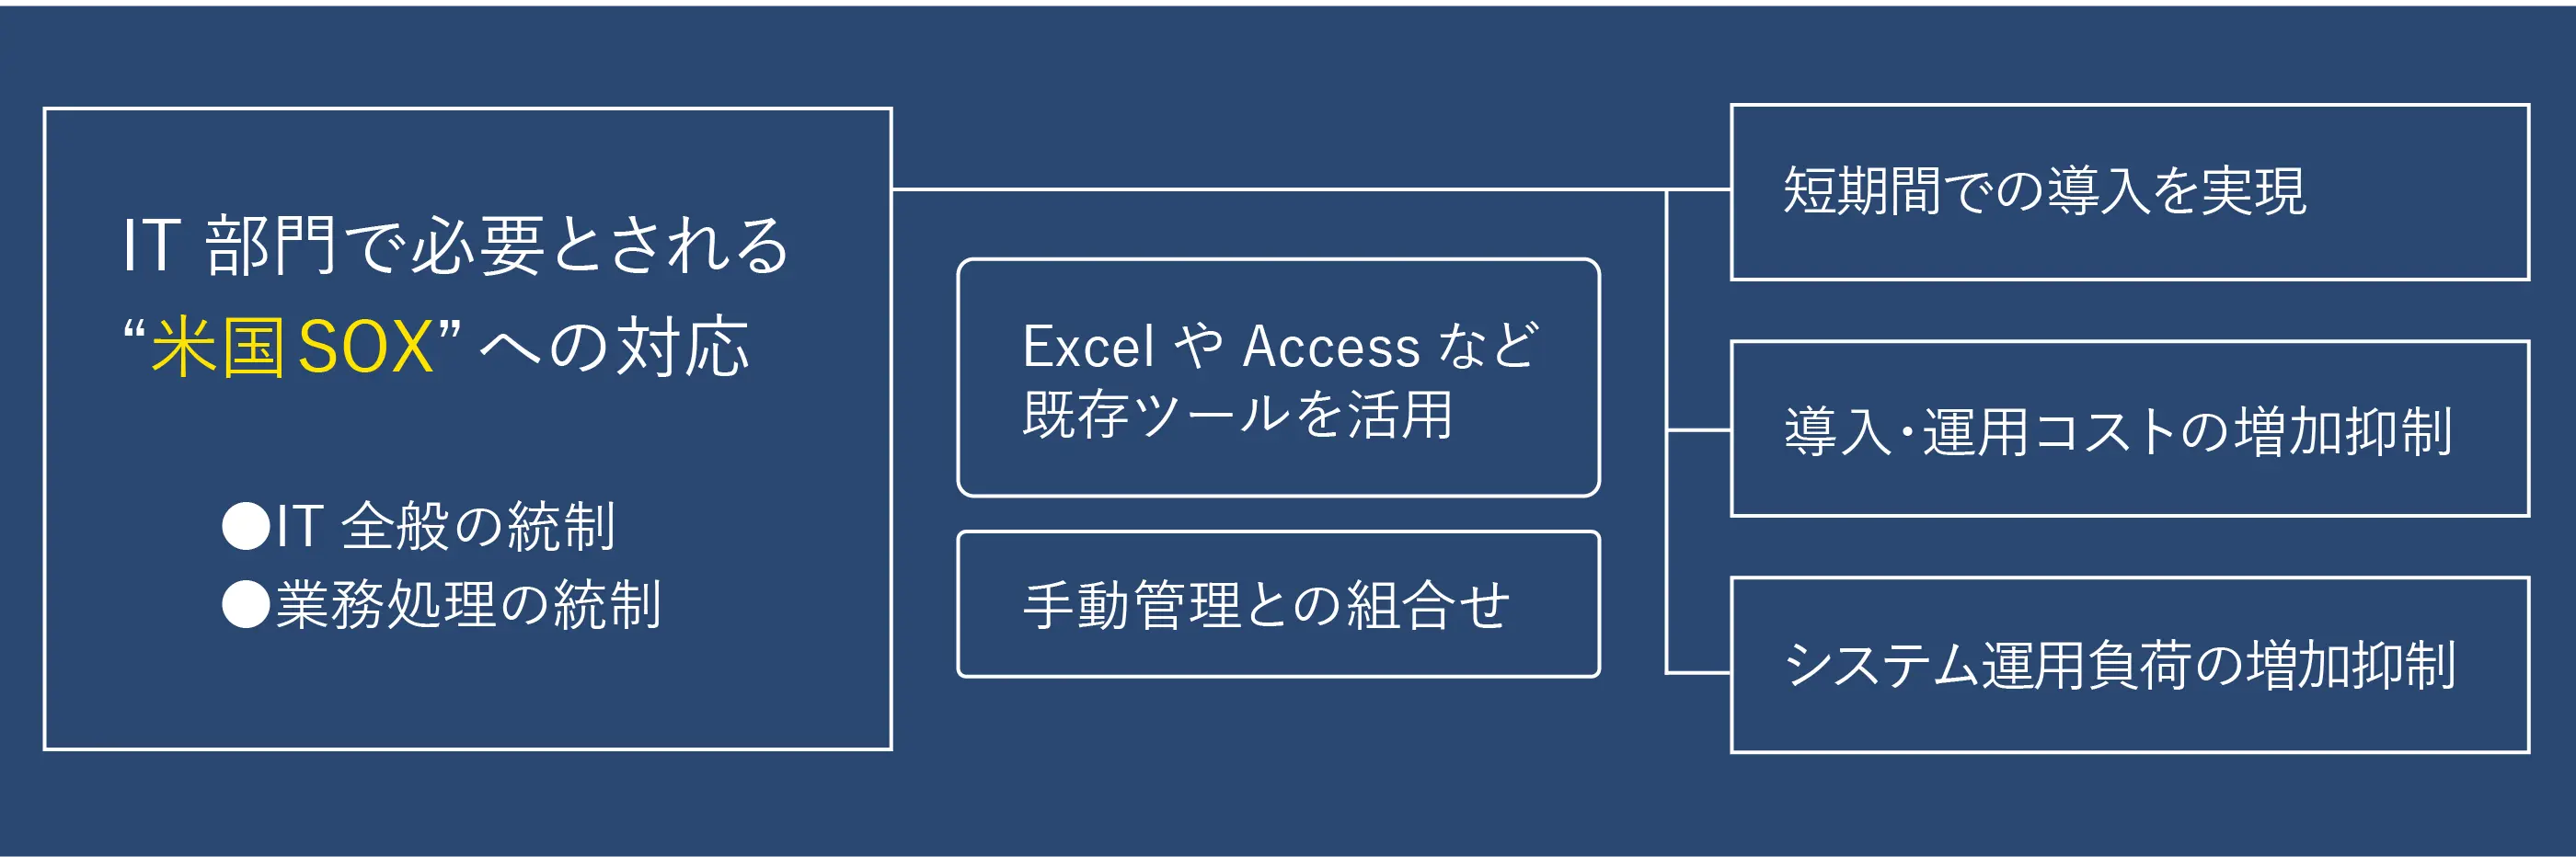 ECサイト会社へSOX法対応支援の概要図